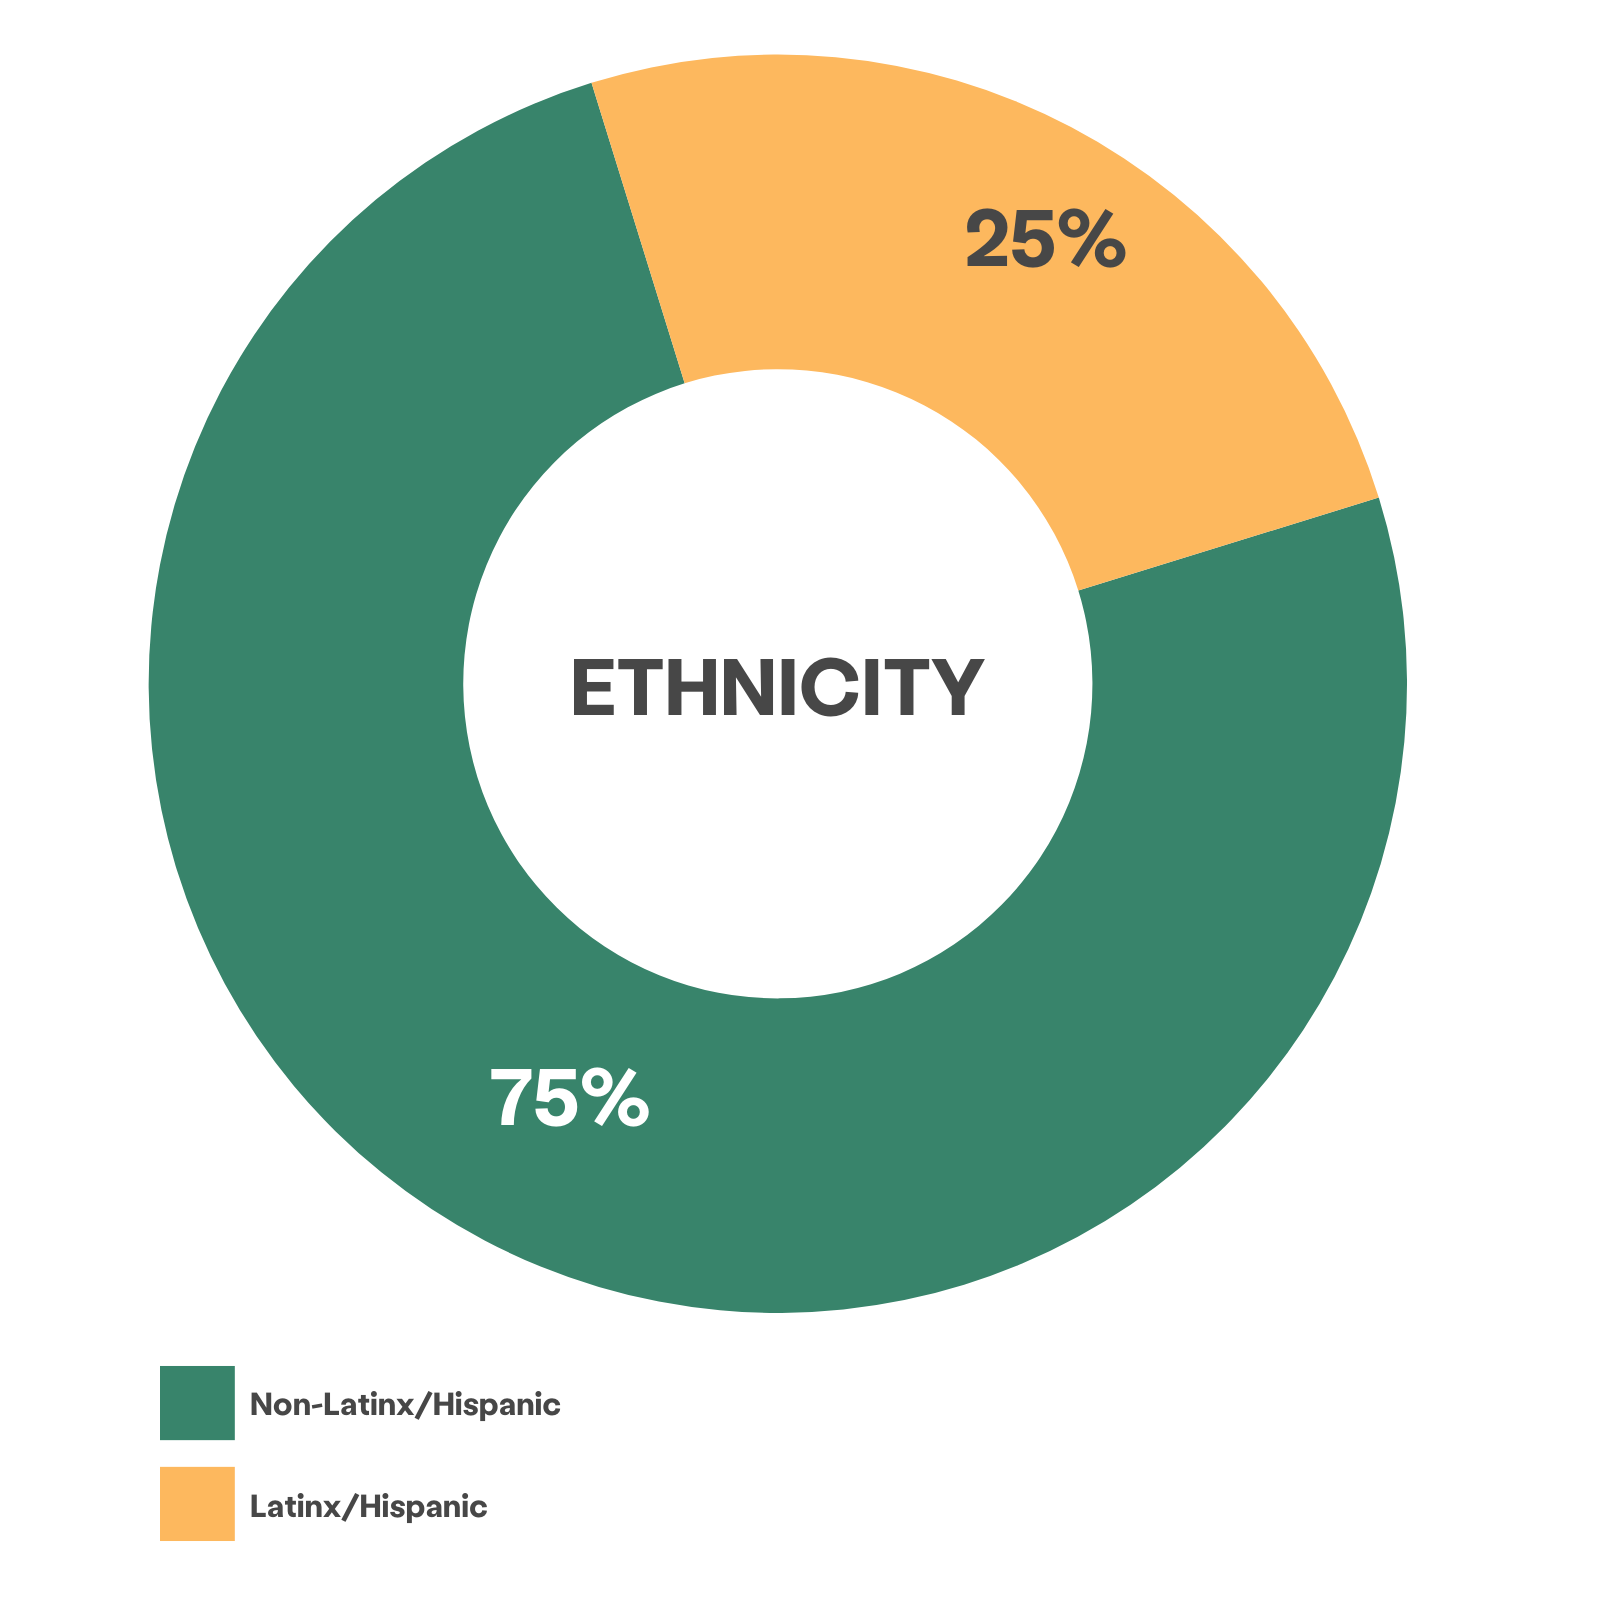 轮状图显示 75% 的客户被确定为非拉丁裔/西班牙裔，25% 被确定为拉丁裔/西班牙裔